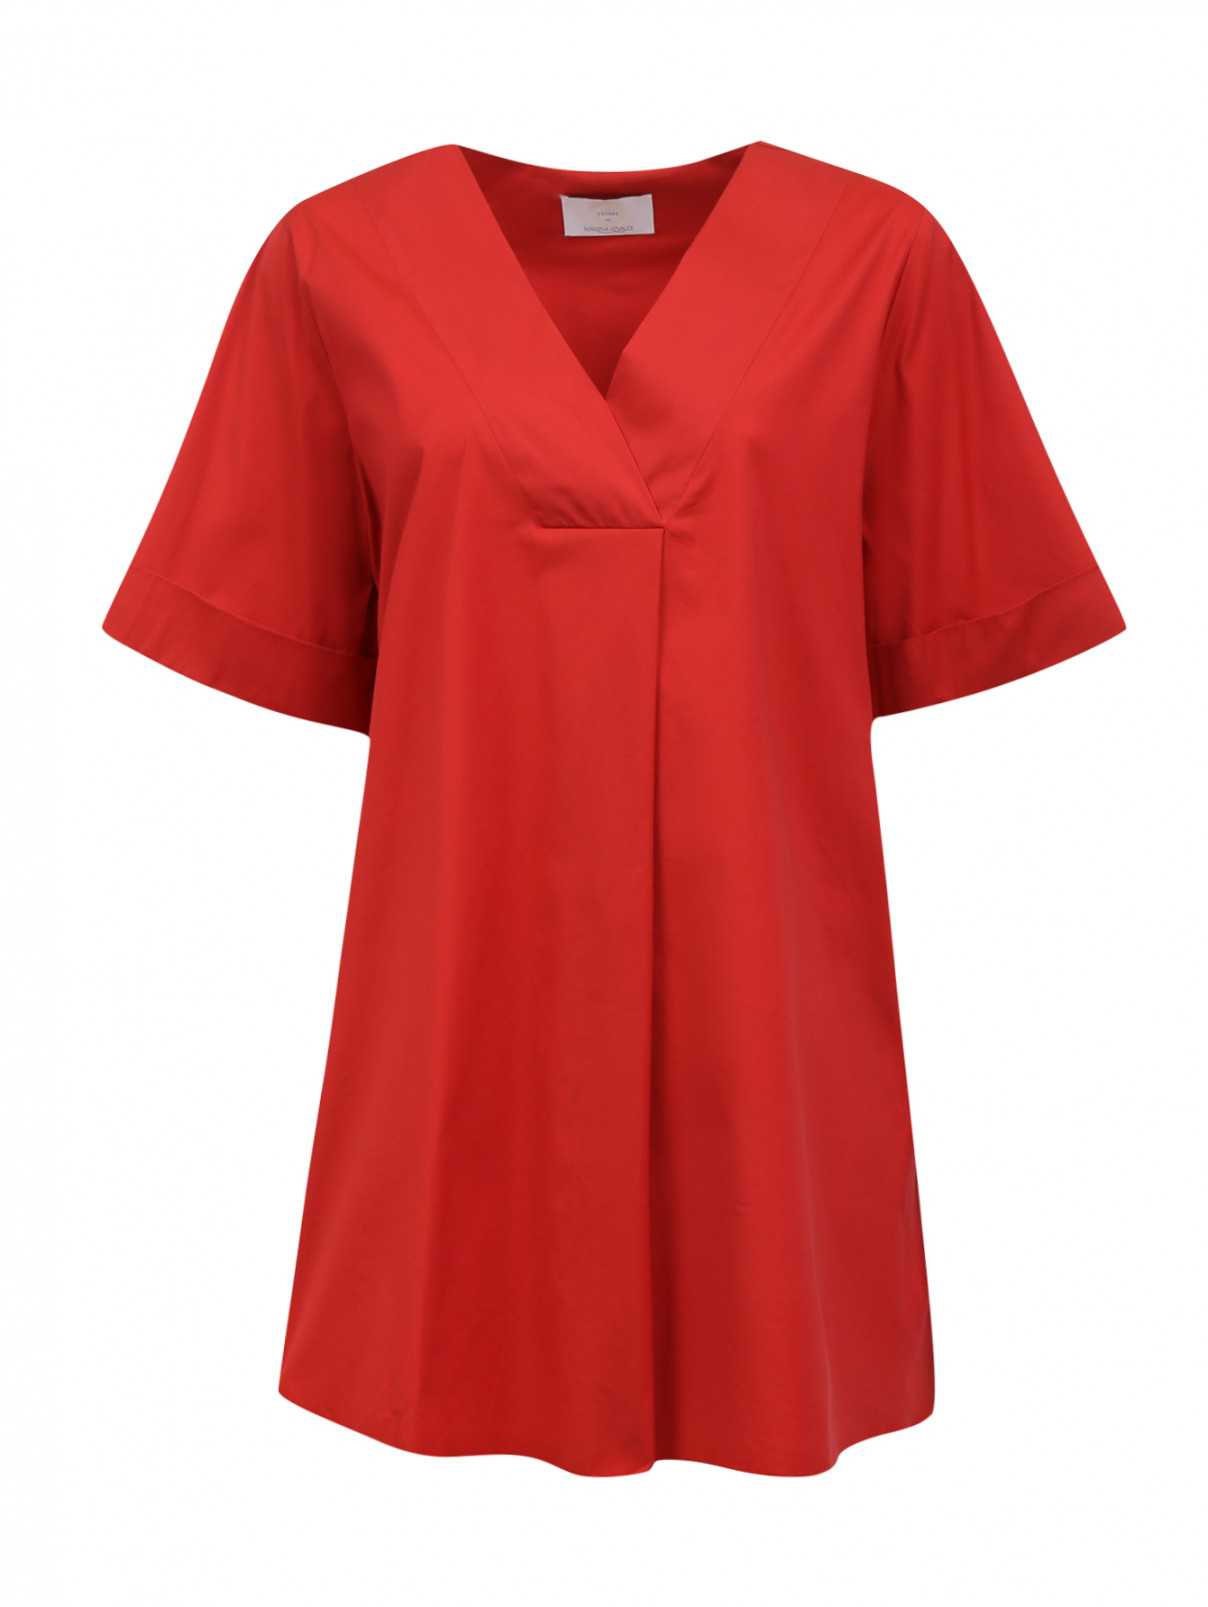 Удлиненная блуза из хлопка с коротким рукавом Voyage by Marina Rinaldi  –  Общий вид  – Цвет:  Красный